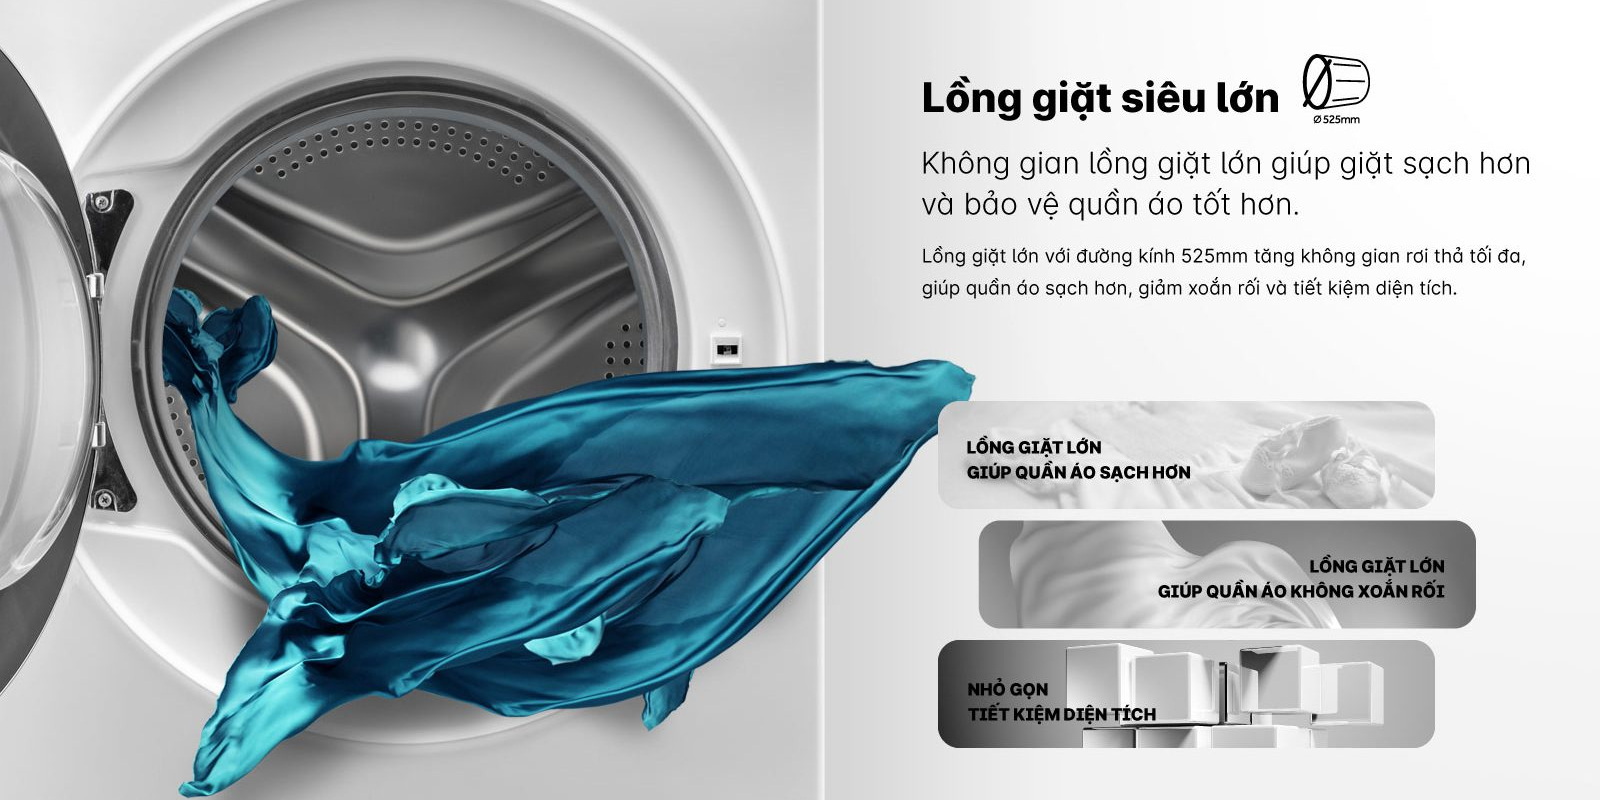 Lồng giặt lớn 525 mm giúp giảm xoắn rối áo quần sau khi giặt 